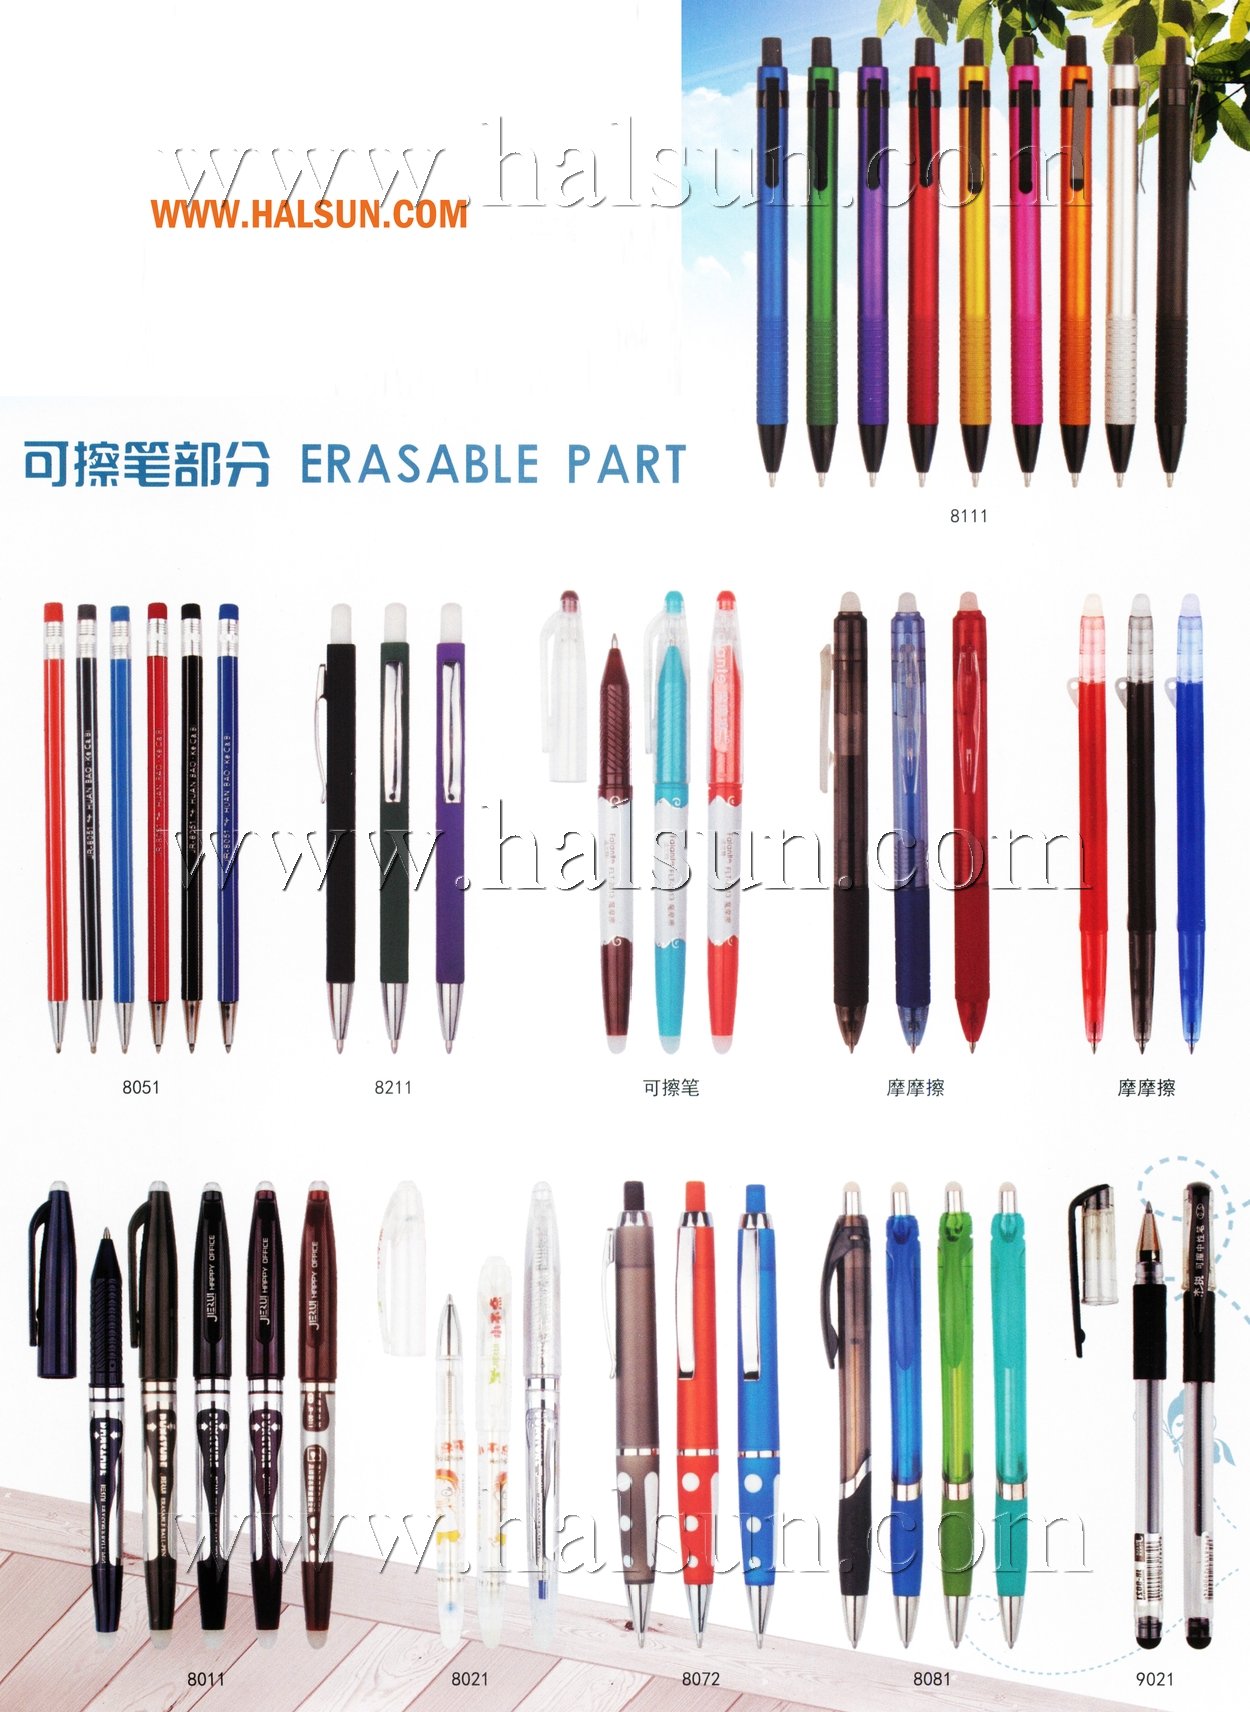 Erasable pens,erasable ballpoint pens,2015_08_07_17_18_48